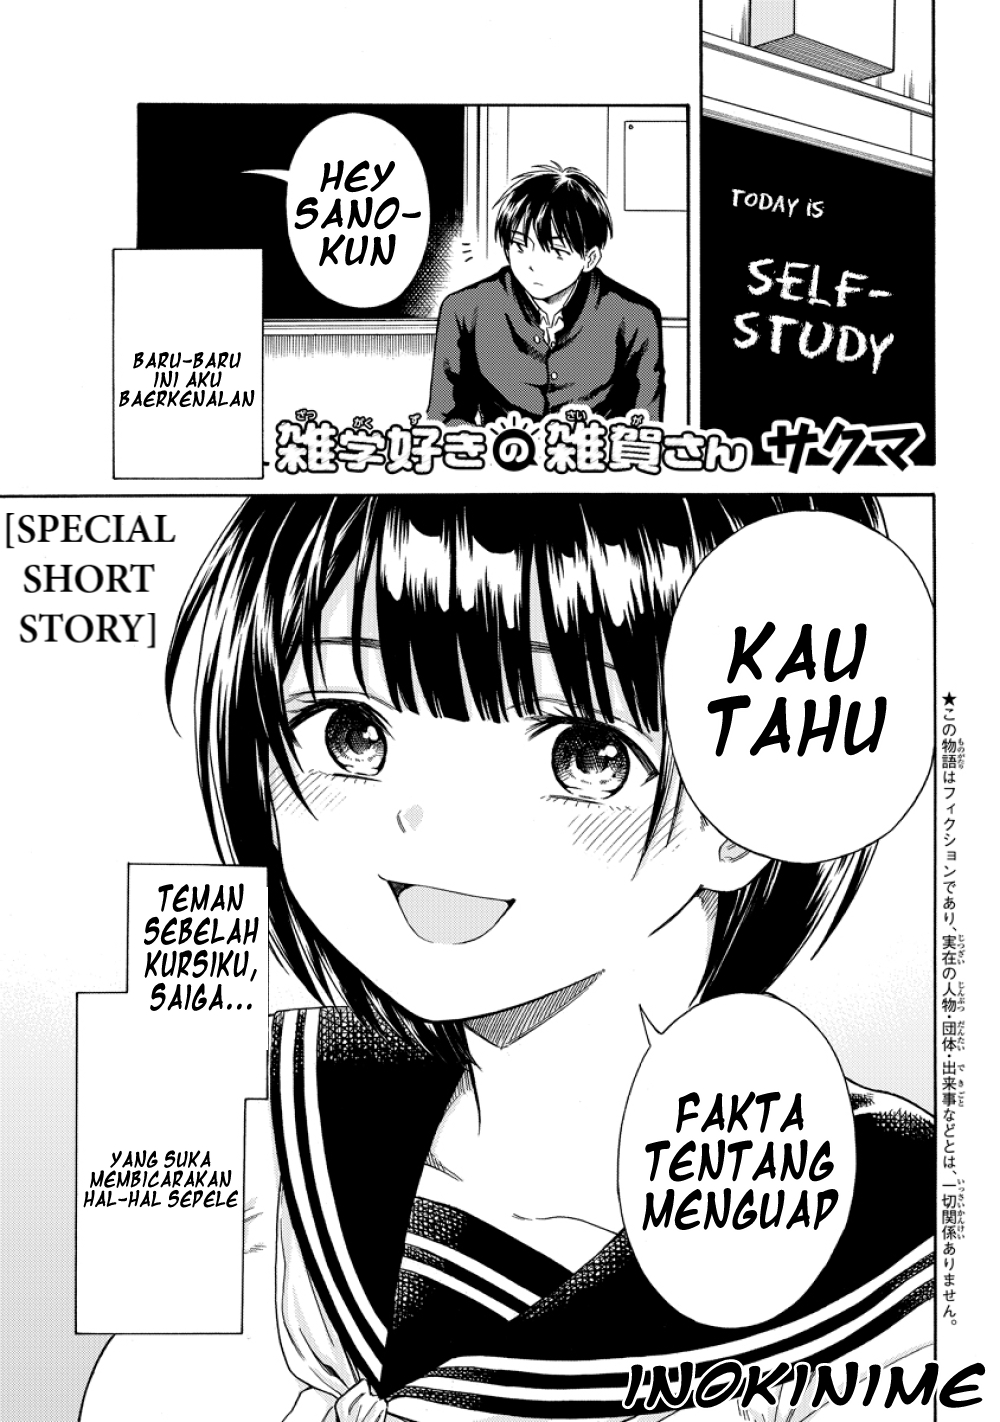 Baca Komik Zatsugaku Suki no Saiga-san Chapter 1-End Gambar 1